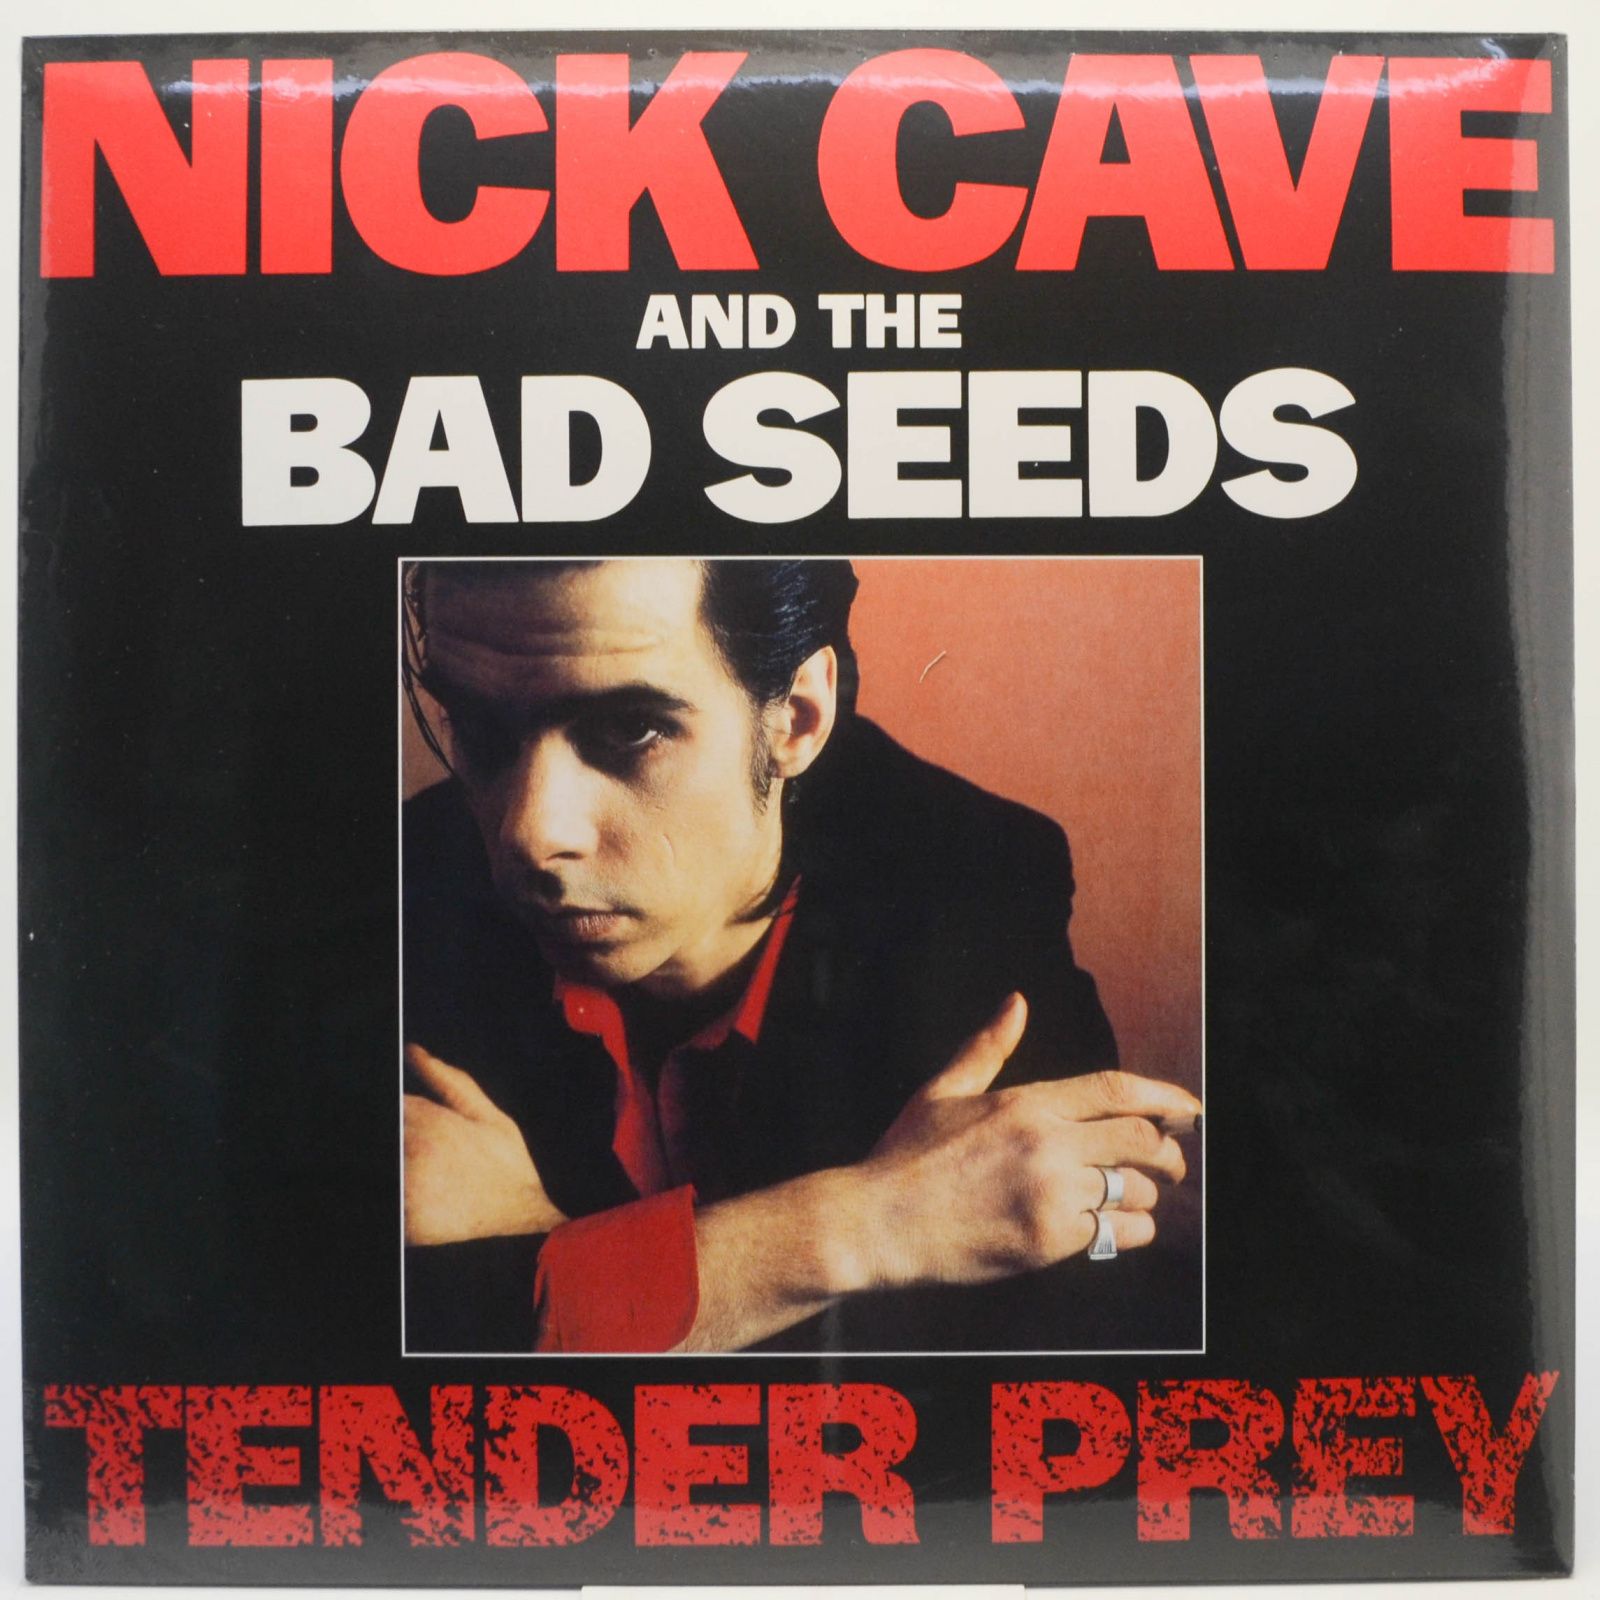 Nick Cave & The Bad Seeds — Tender Prey, 1988